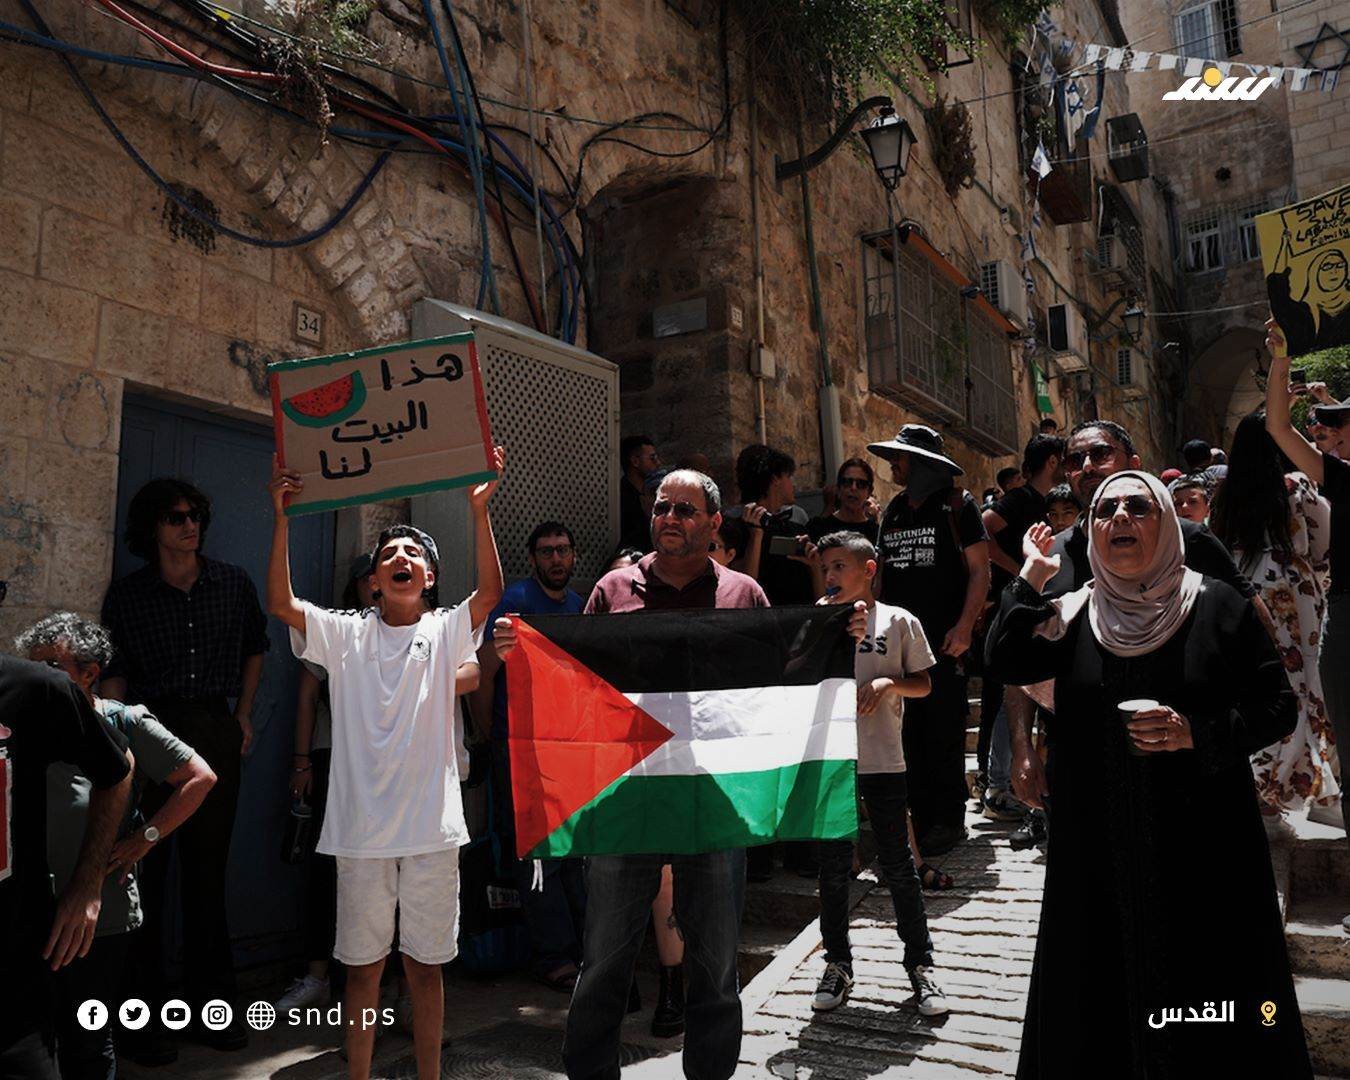 وقفة تضامنية مع عائلة صب لبن بالبلدة القديمة في القدس احتجاجا على تهجيرها قسريا من منزلها (4).jpg